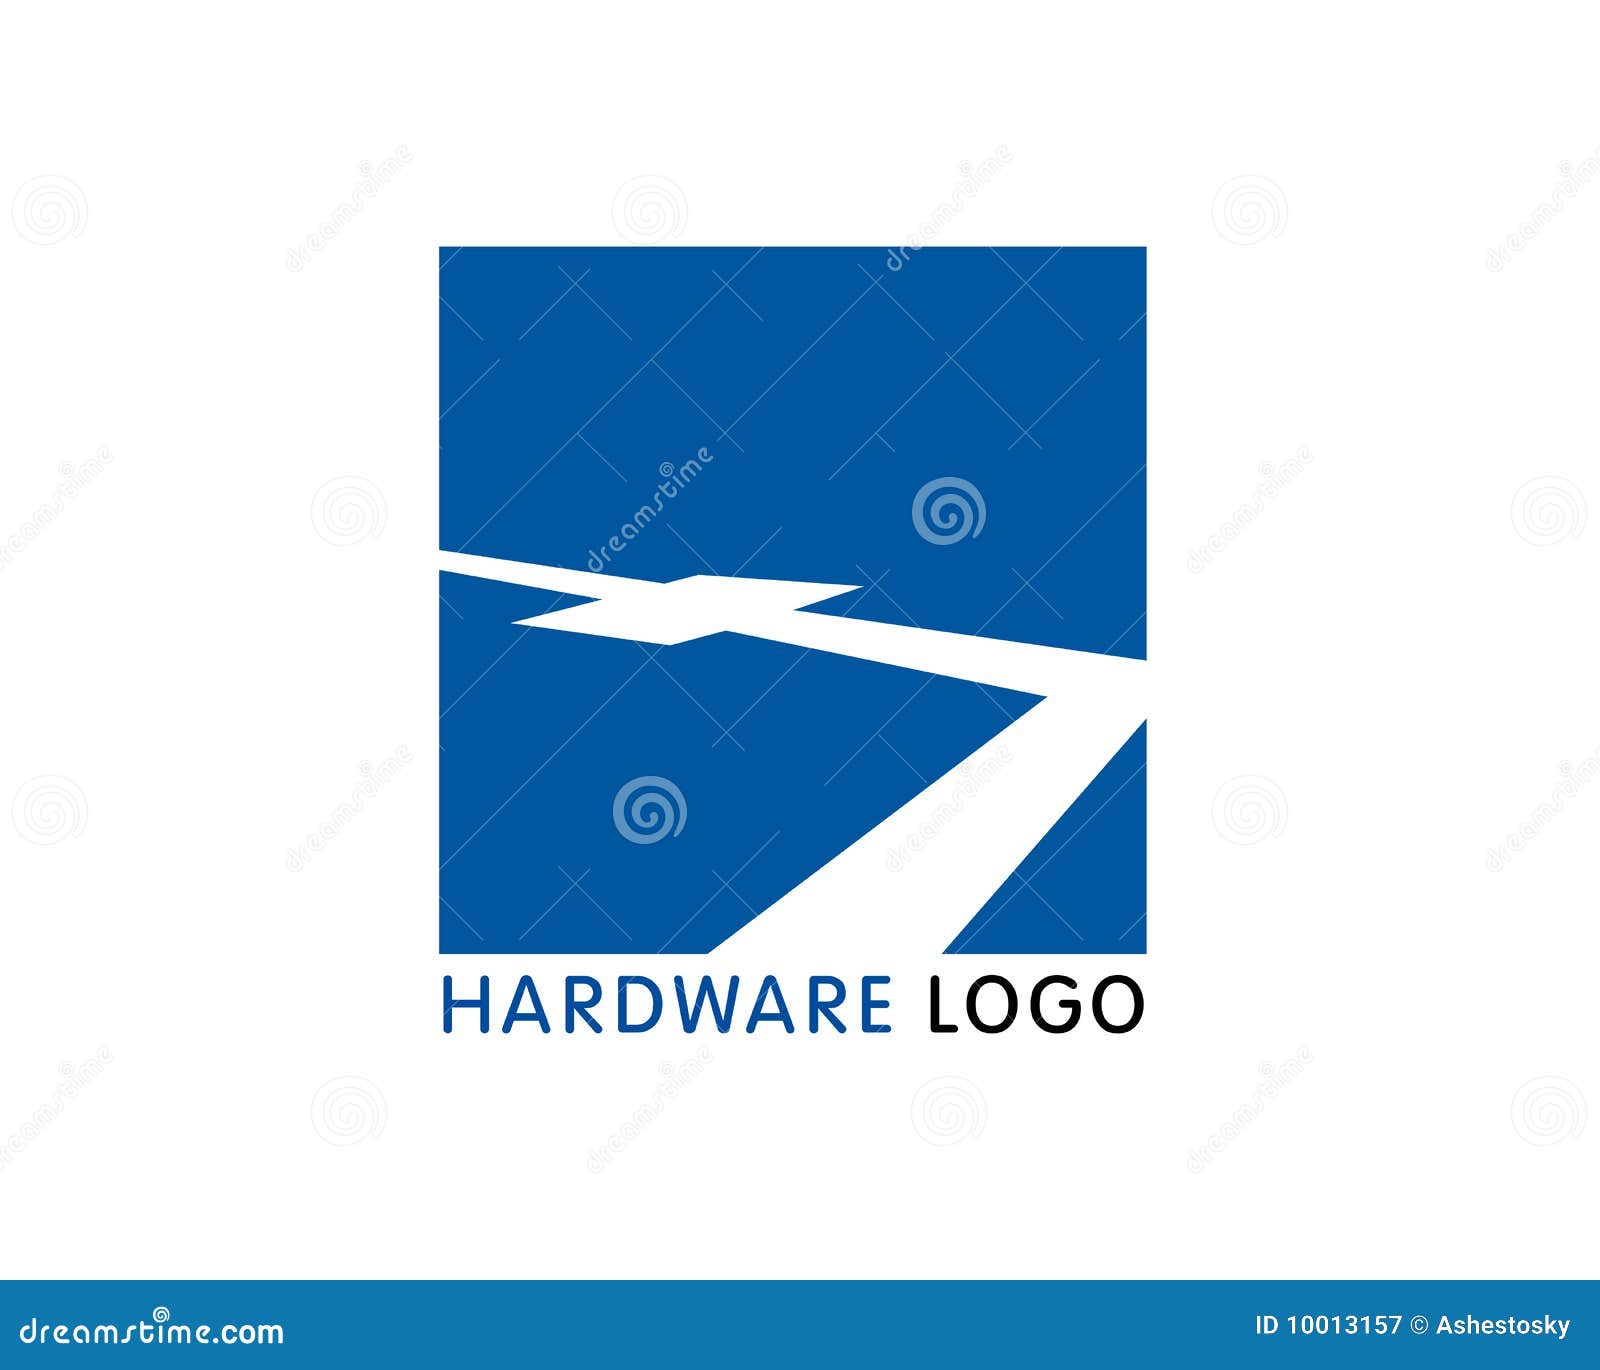 hardware software company logo